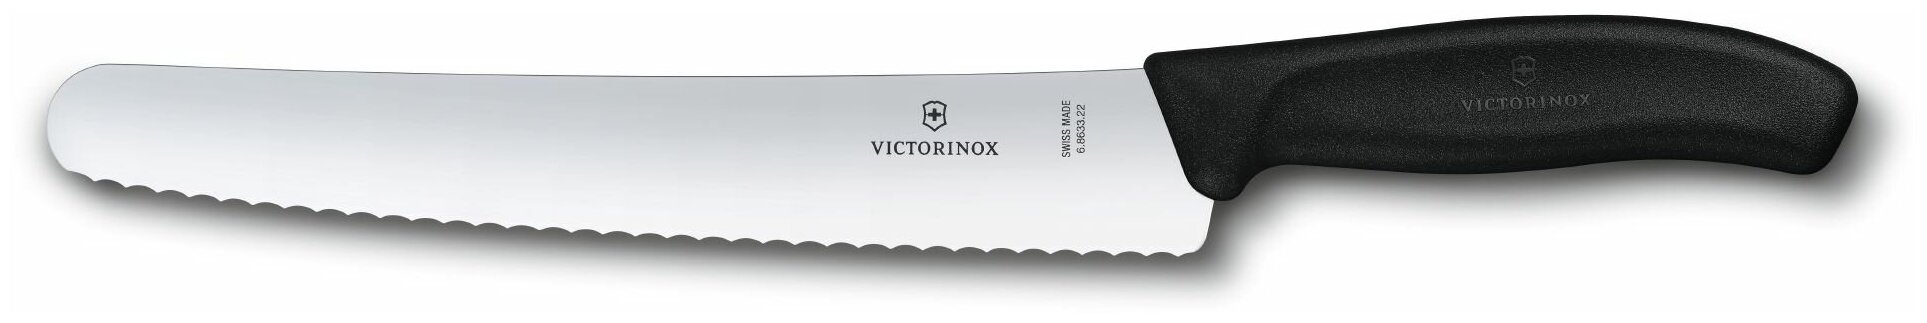 Нож Victorinox для хлеба и выпечки, лезвие 22 см волнистое, в блистере, черный